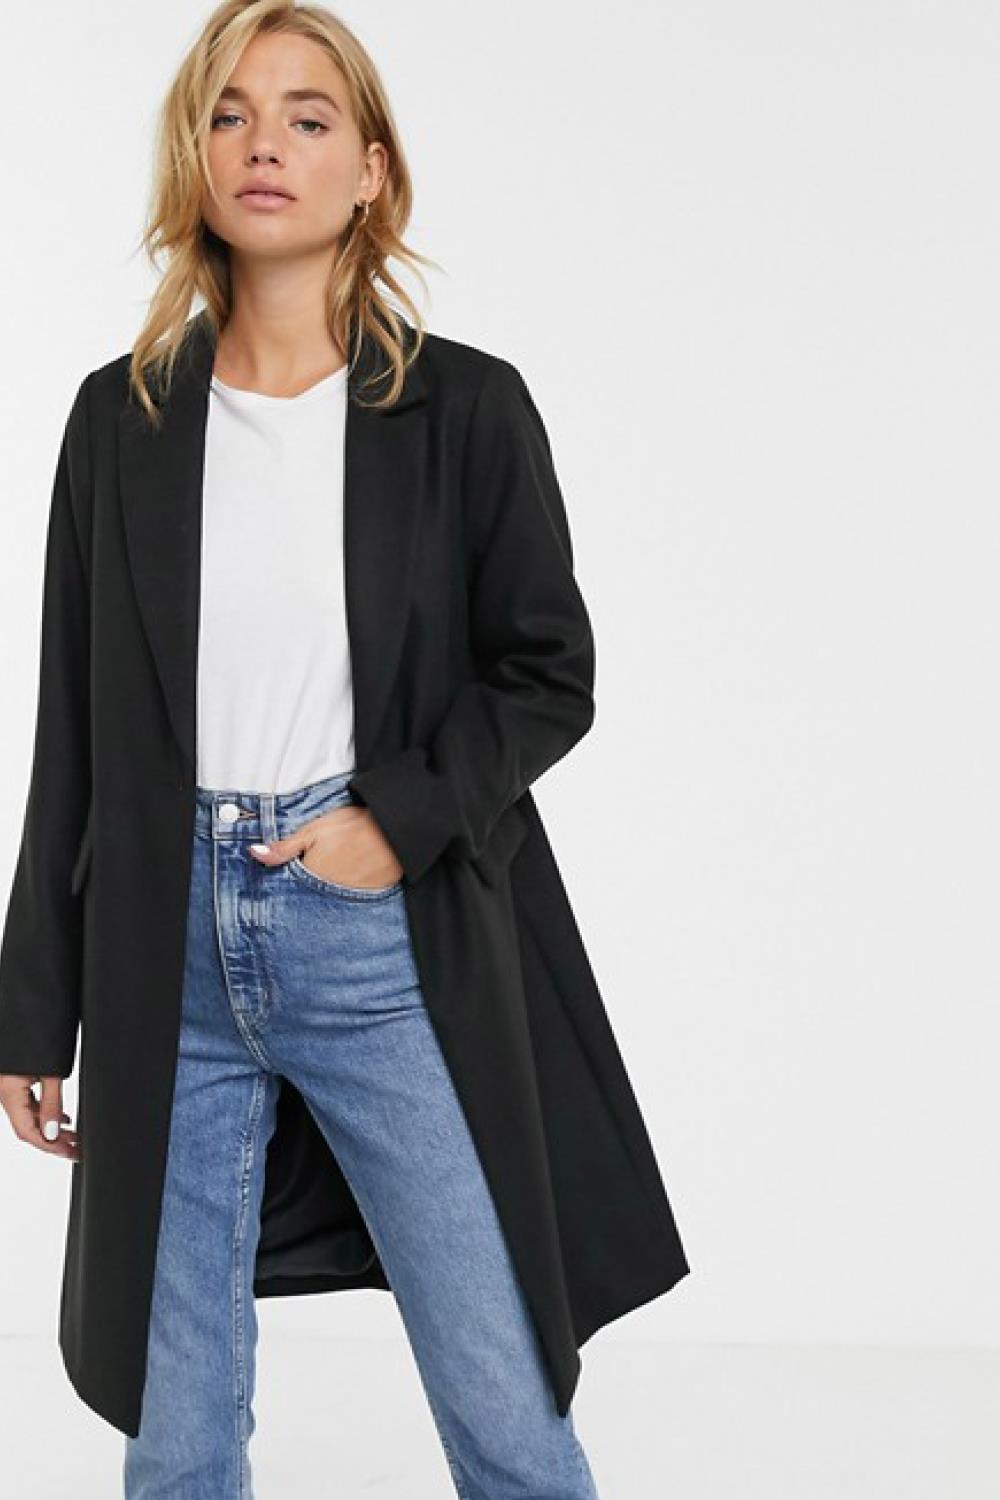 abrigos de moda otoño invierno 2019 2020 new look 46,99€